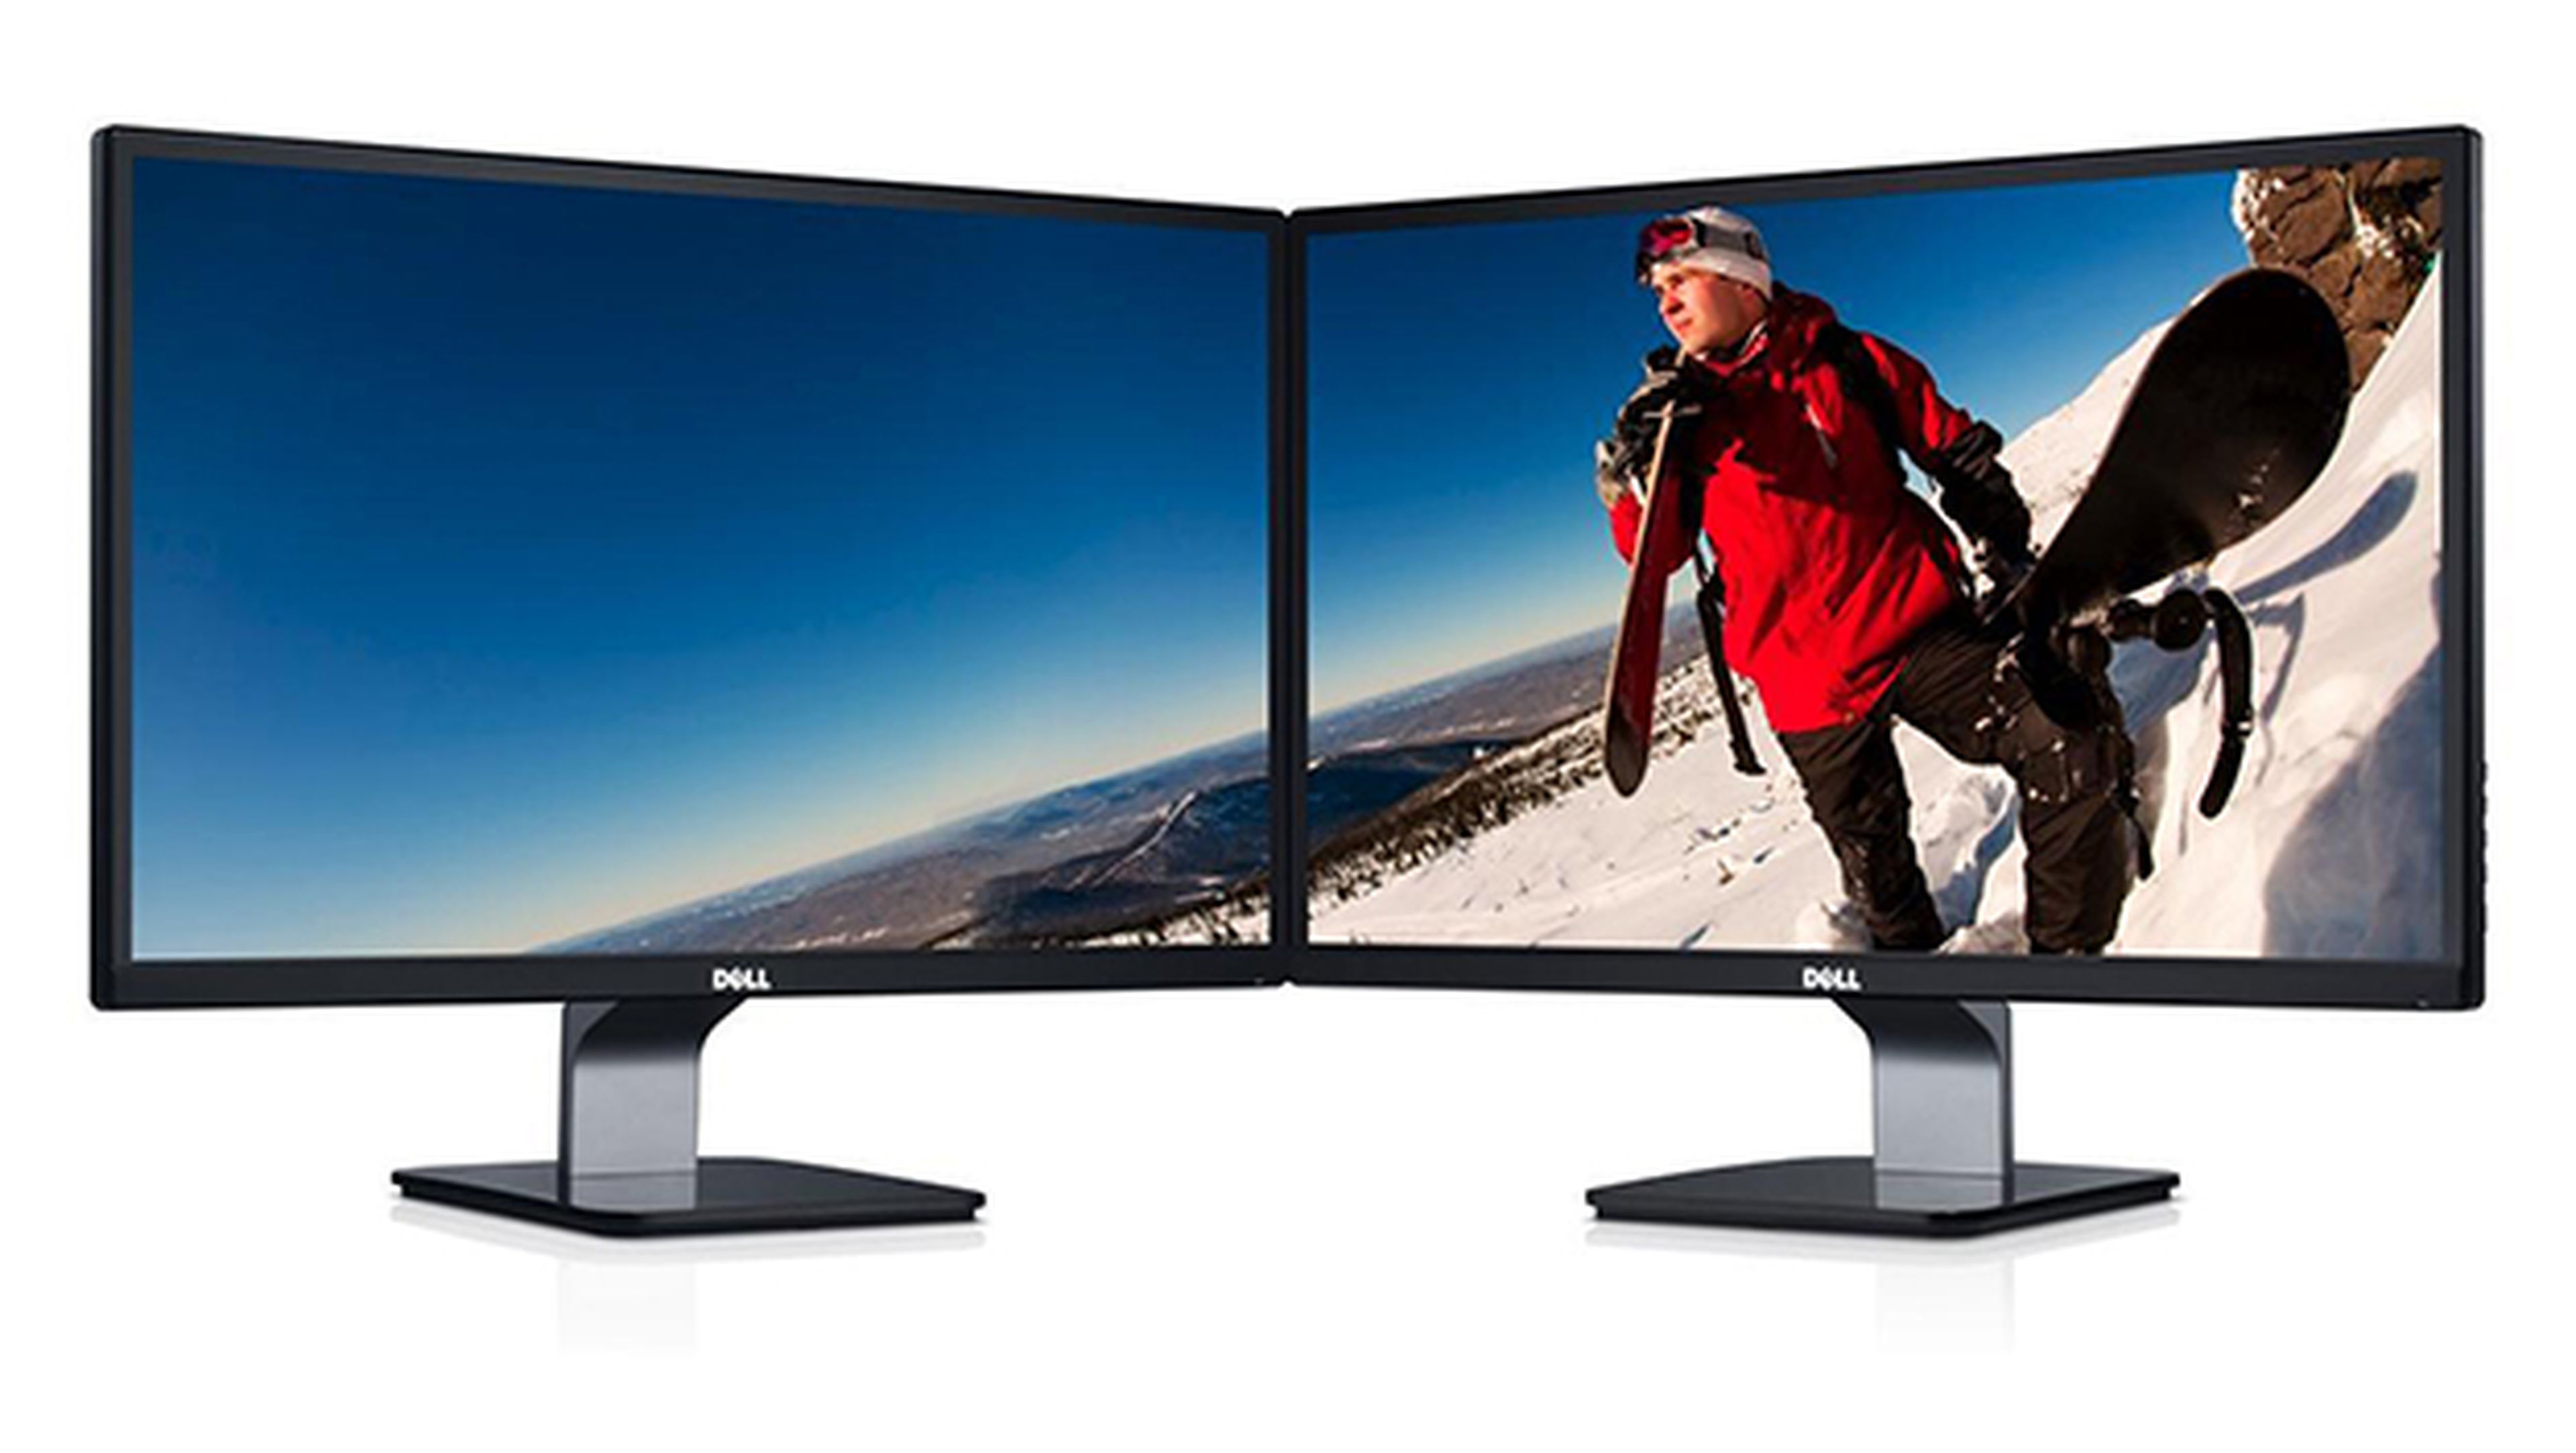 Dell presenta su primer monitor HDR a resolución 4K